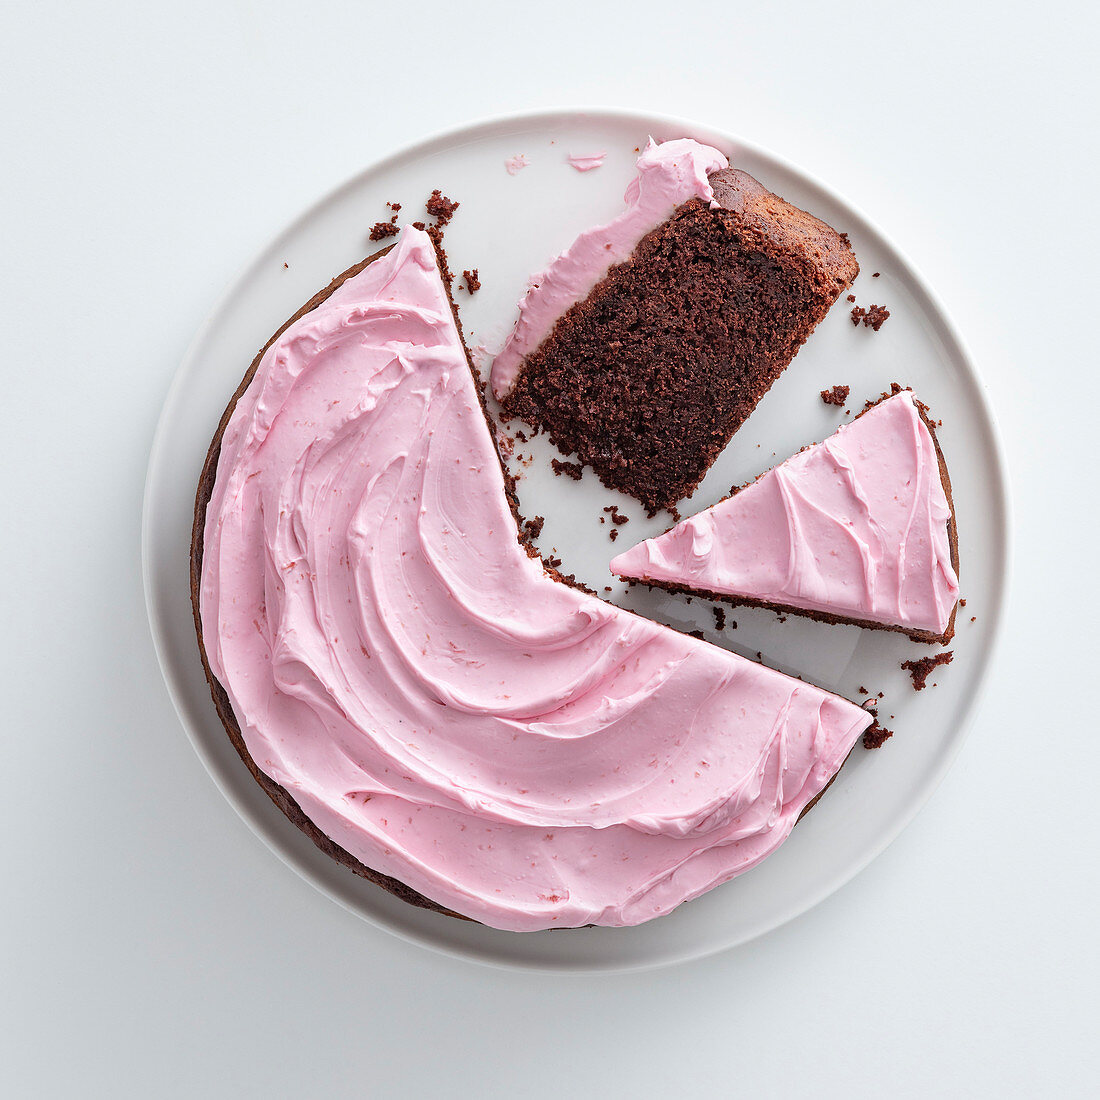 Rote-Bete-Kuchen mit Kakao und pinkfarbenem Zuckerguss